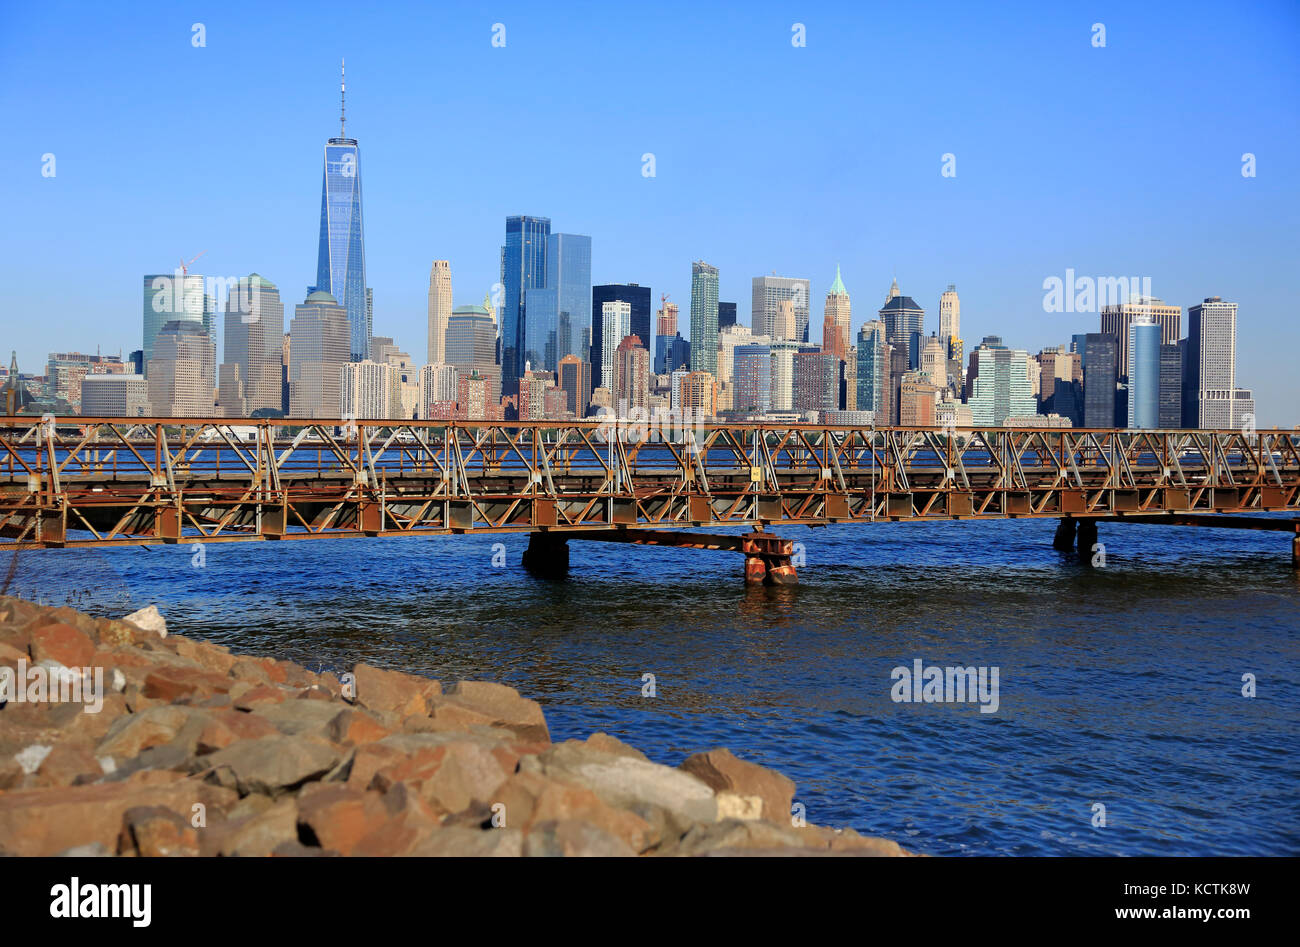 La ligne d'horizon du quartier financier de Lower Manhattan avec un pont à pied relie Ellis Island et Liberty State Park au-dessus de l'Hudson River en premier plan, NJ, USA Banque D'Images